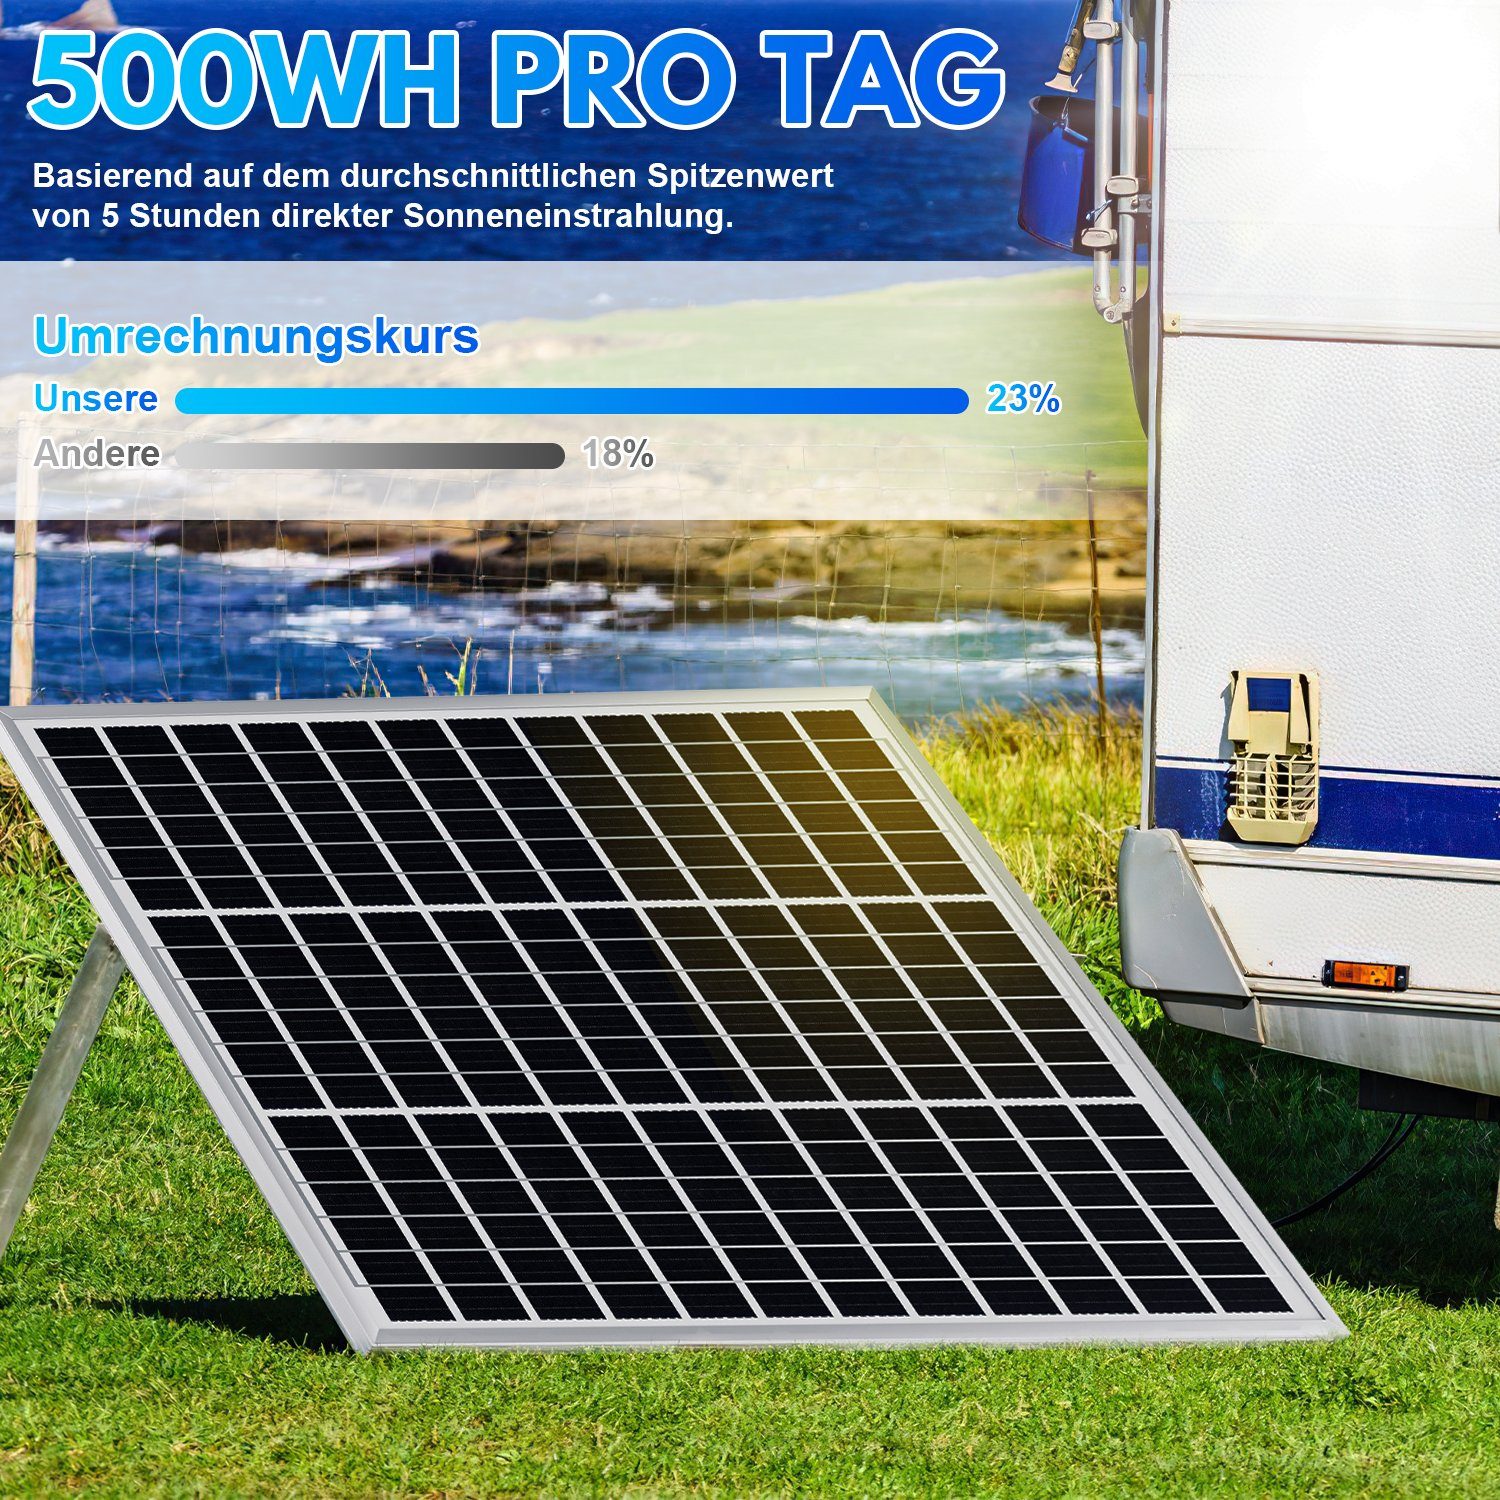 Gimisgu für 100 Camper, Solaranlage W Wohnwagen, 100W Solarpanel Solarmodul Solaranlage